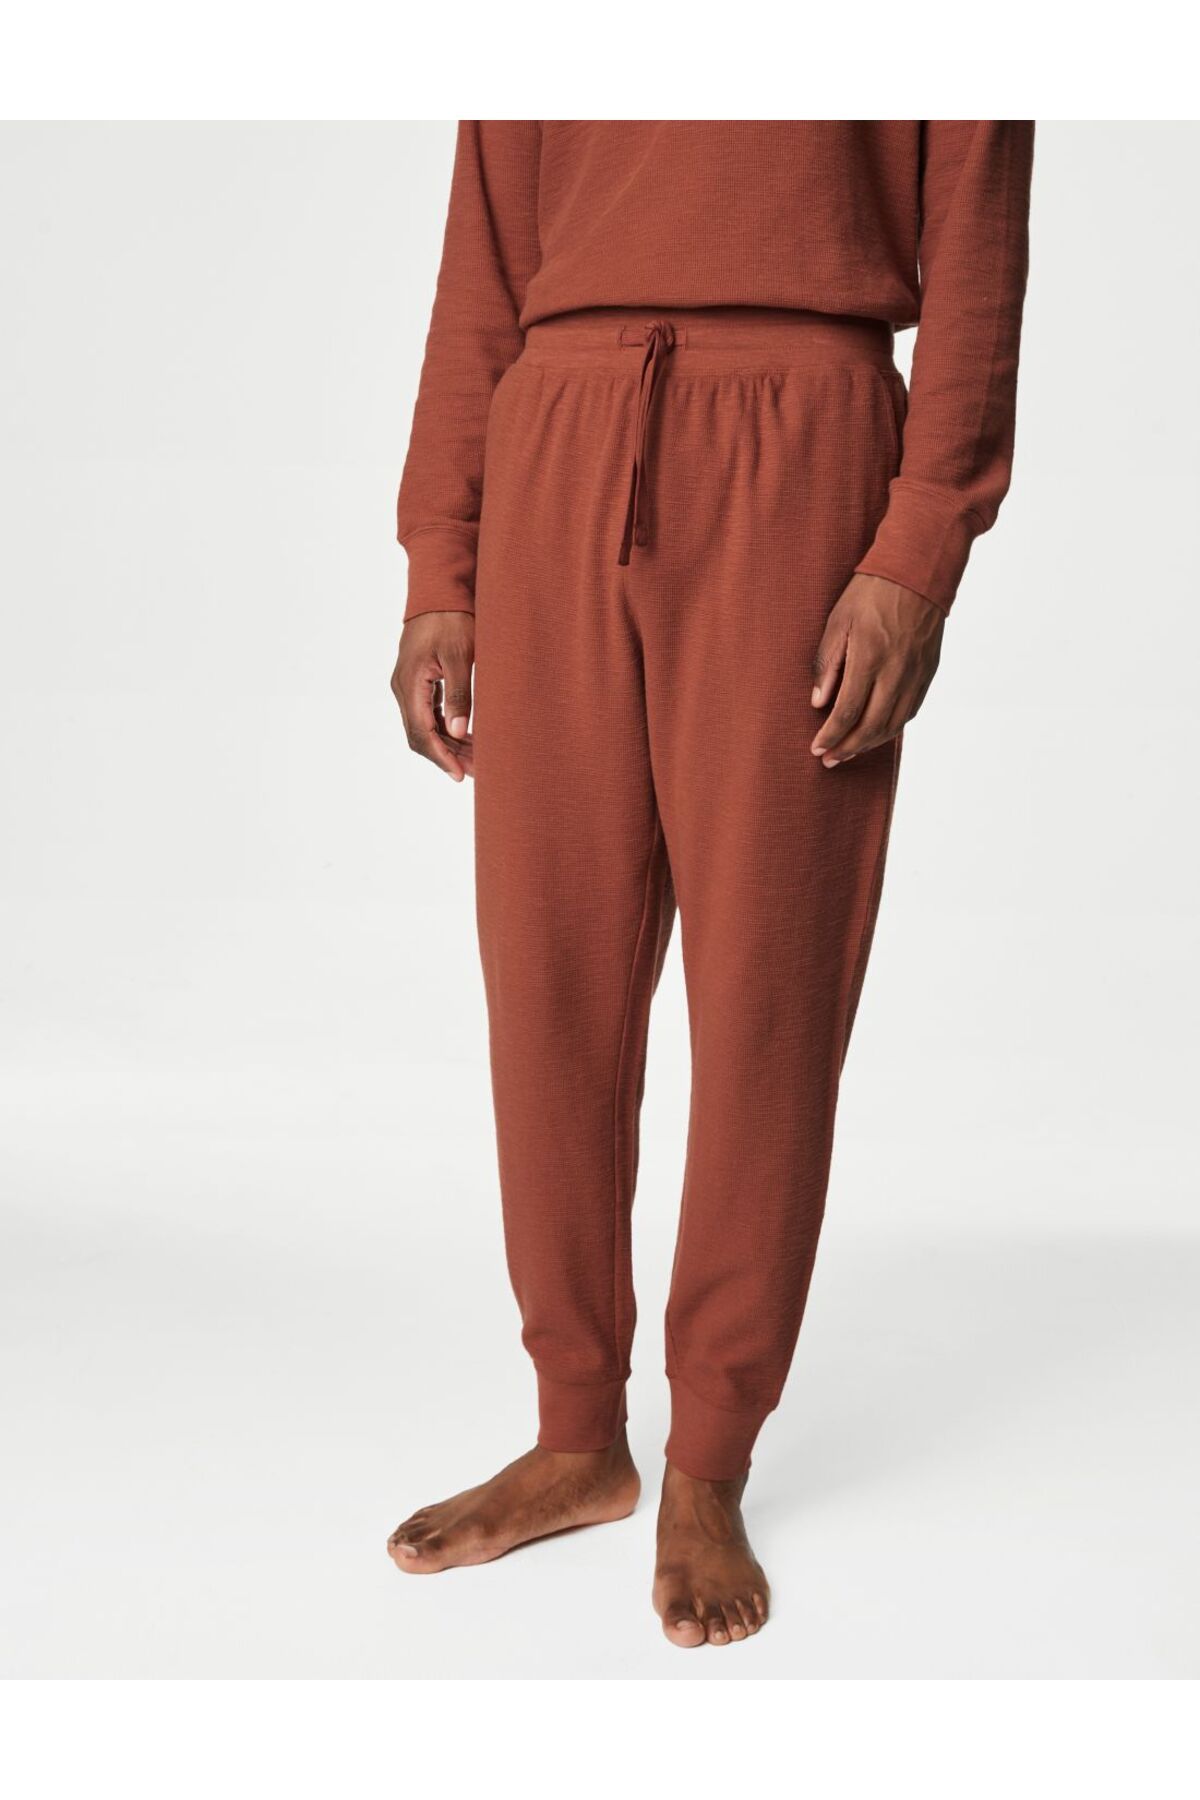 Marks & Spencer Saf Pamuklu Regular Fit Pijama Altı